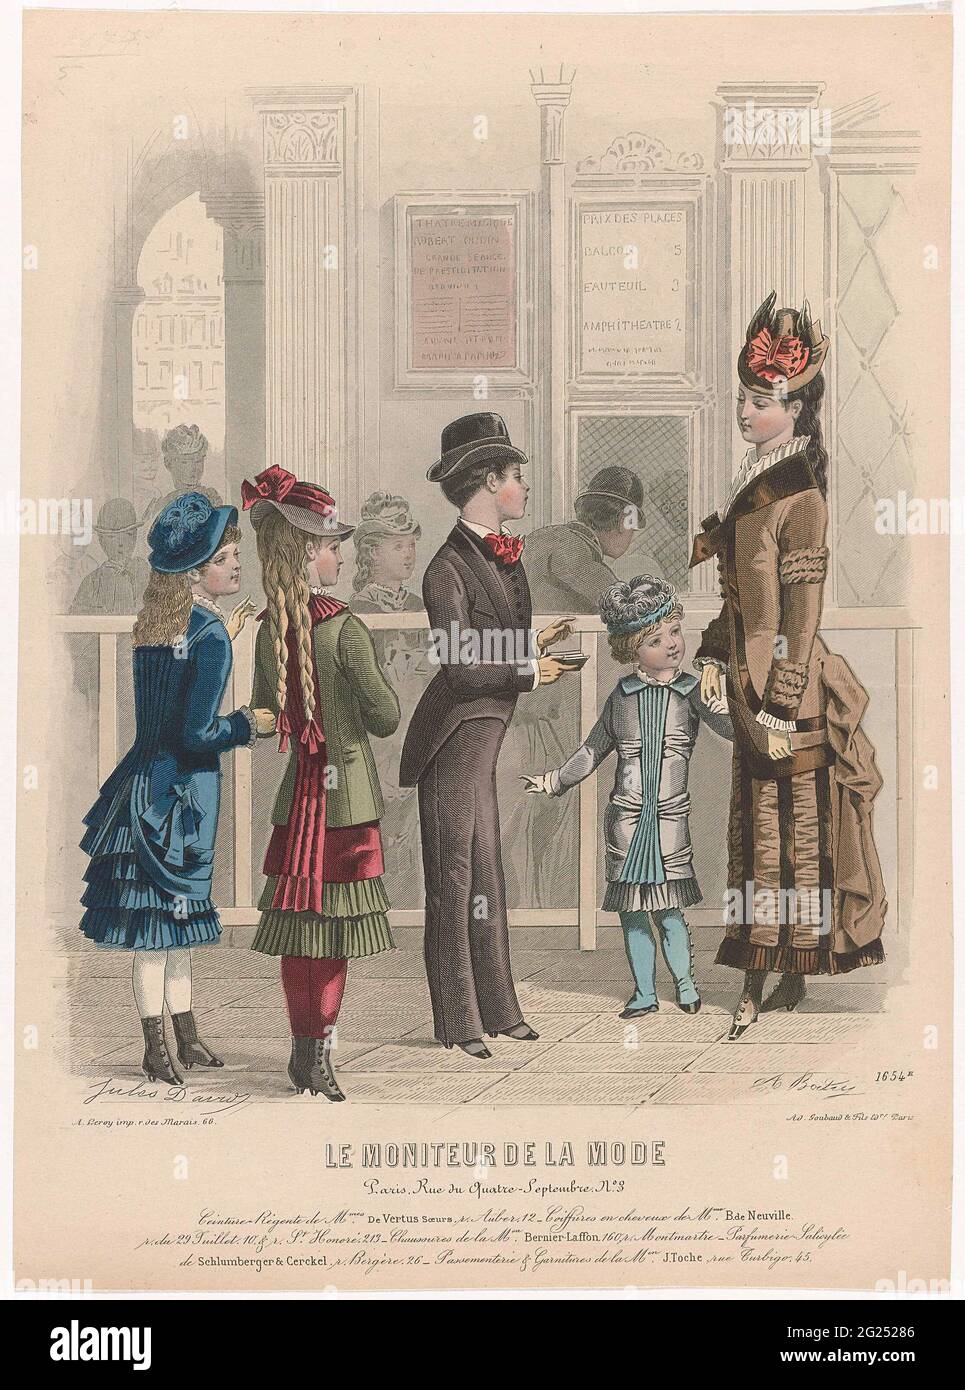 Le Moniteur de la Mode, 1879, no 1654E: Ceinture Régent (...). Una joven y  cuatro niños están en un mostrador. Bajo el show algunas reglas de  publicidad de texto para diferentes productos.